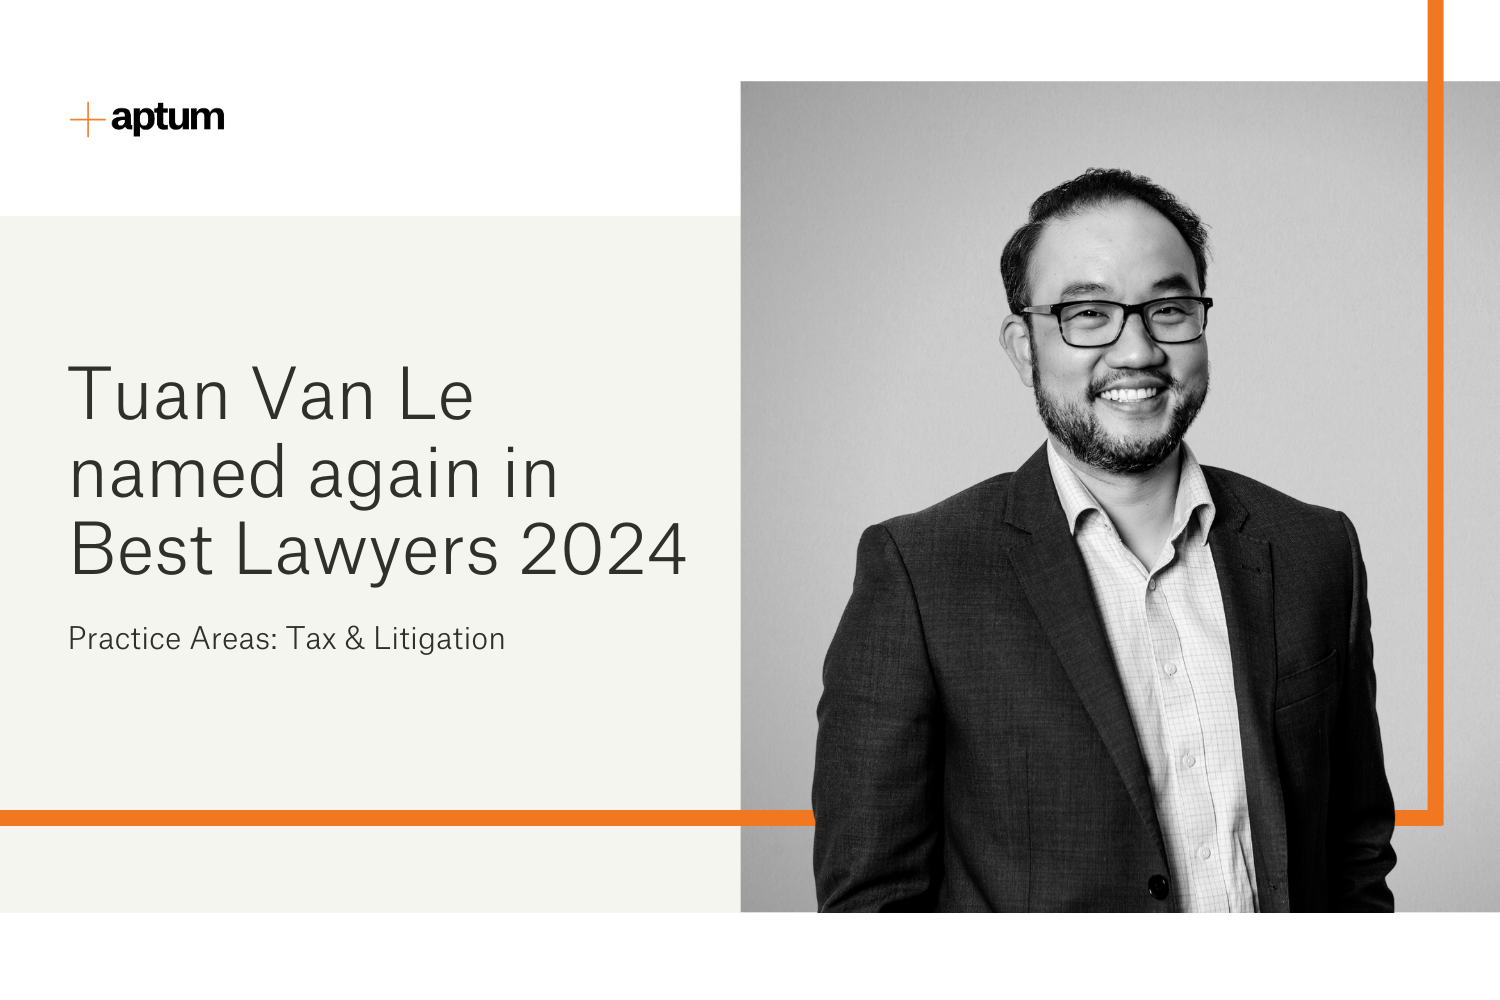 tuan van le pitctured beside text "tuan van le named again in best lawyers 2024"